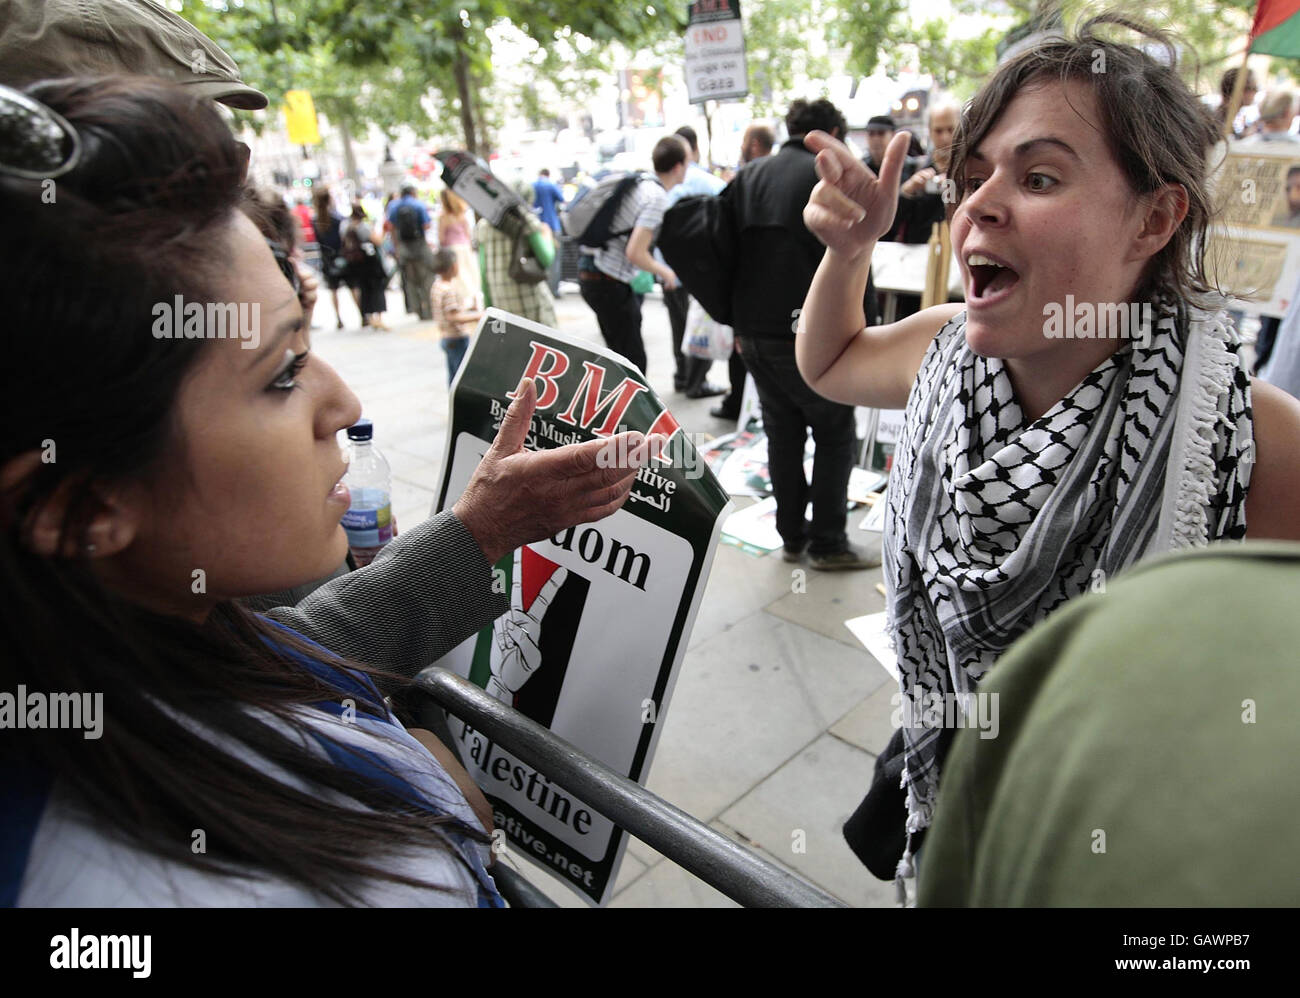 Un dimostratore pro-Palestina (destra) si oppone ad una donna ebrea (sinistra) durante una protesta in coincidenza con la parata del saluto ad Israele in Trafalgar Square, Londra, Regno Unito. Foto Stock